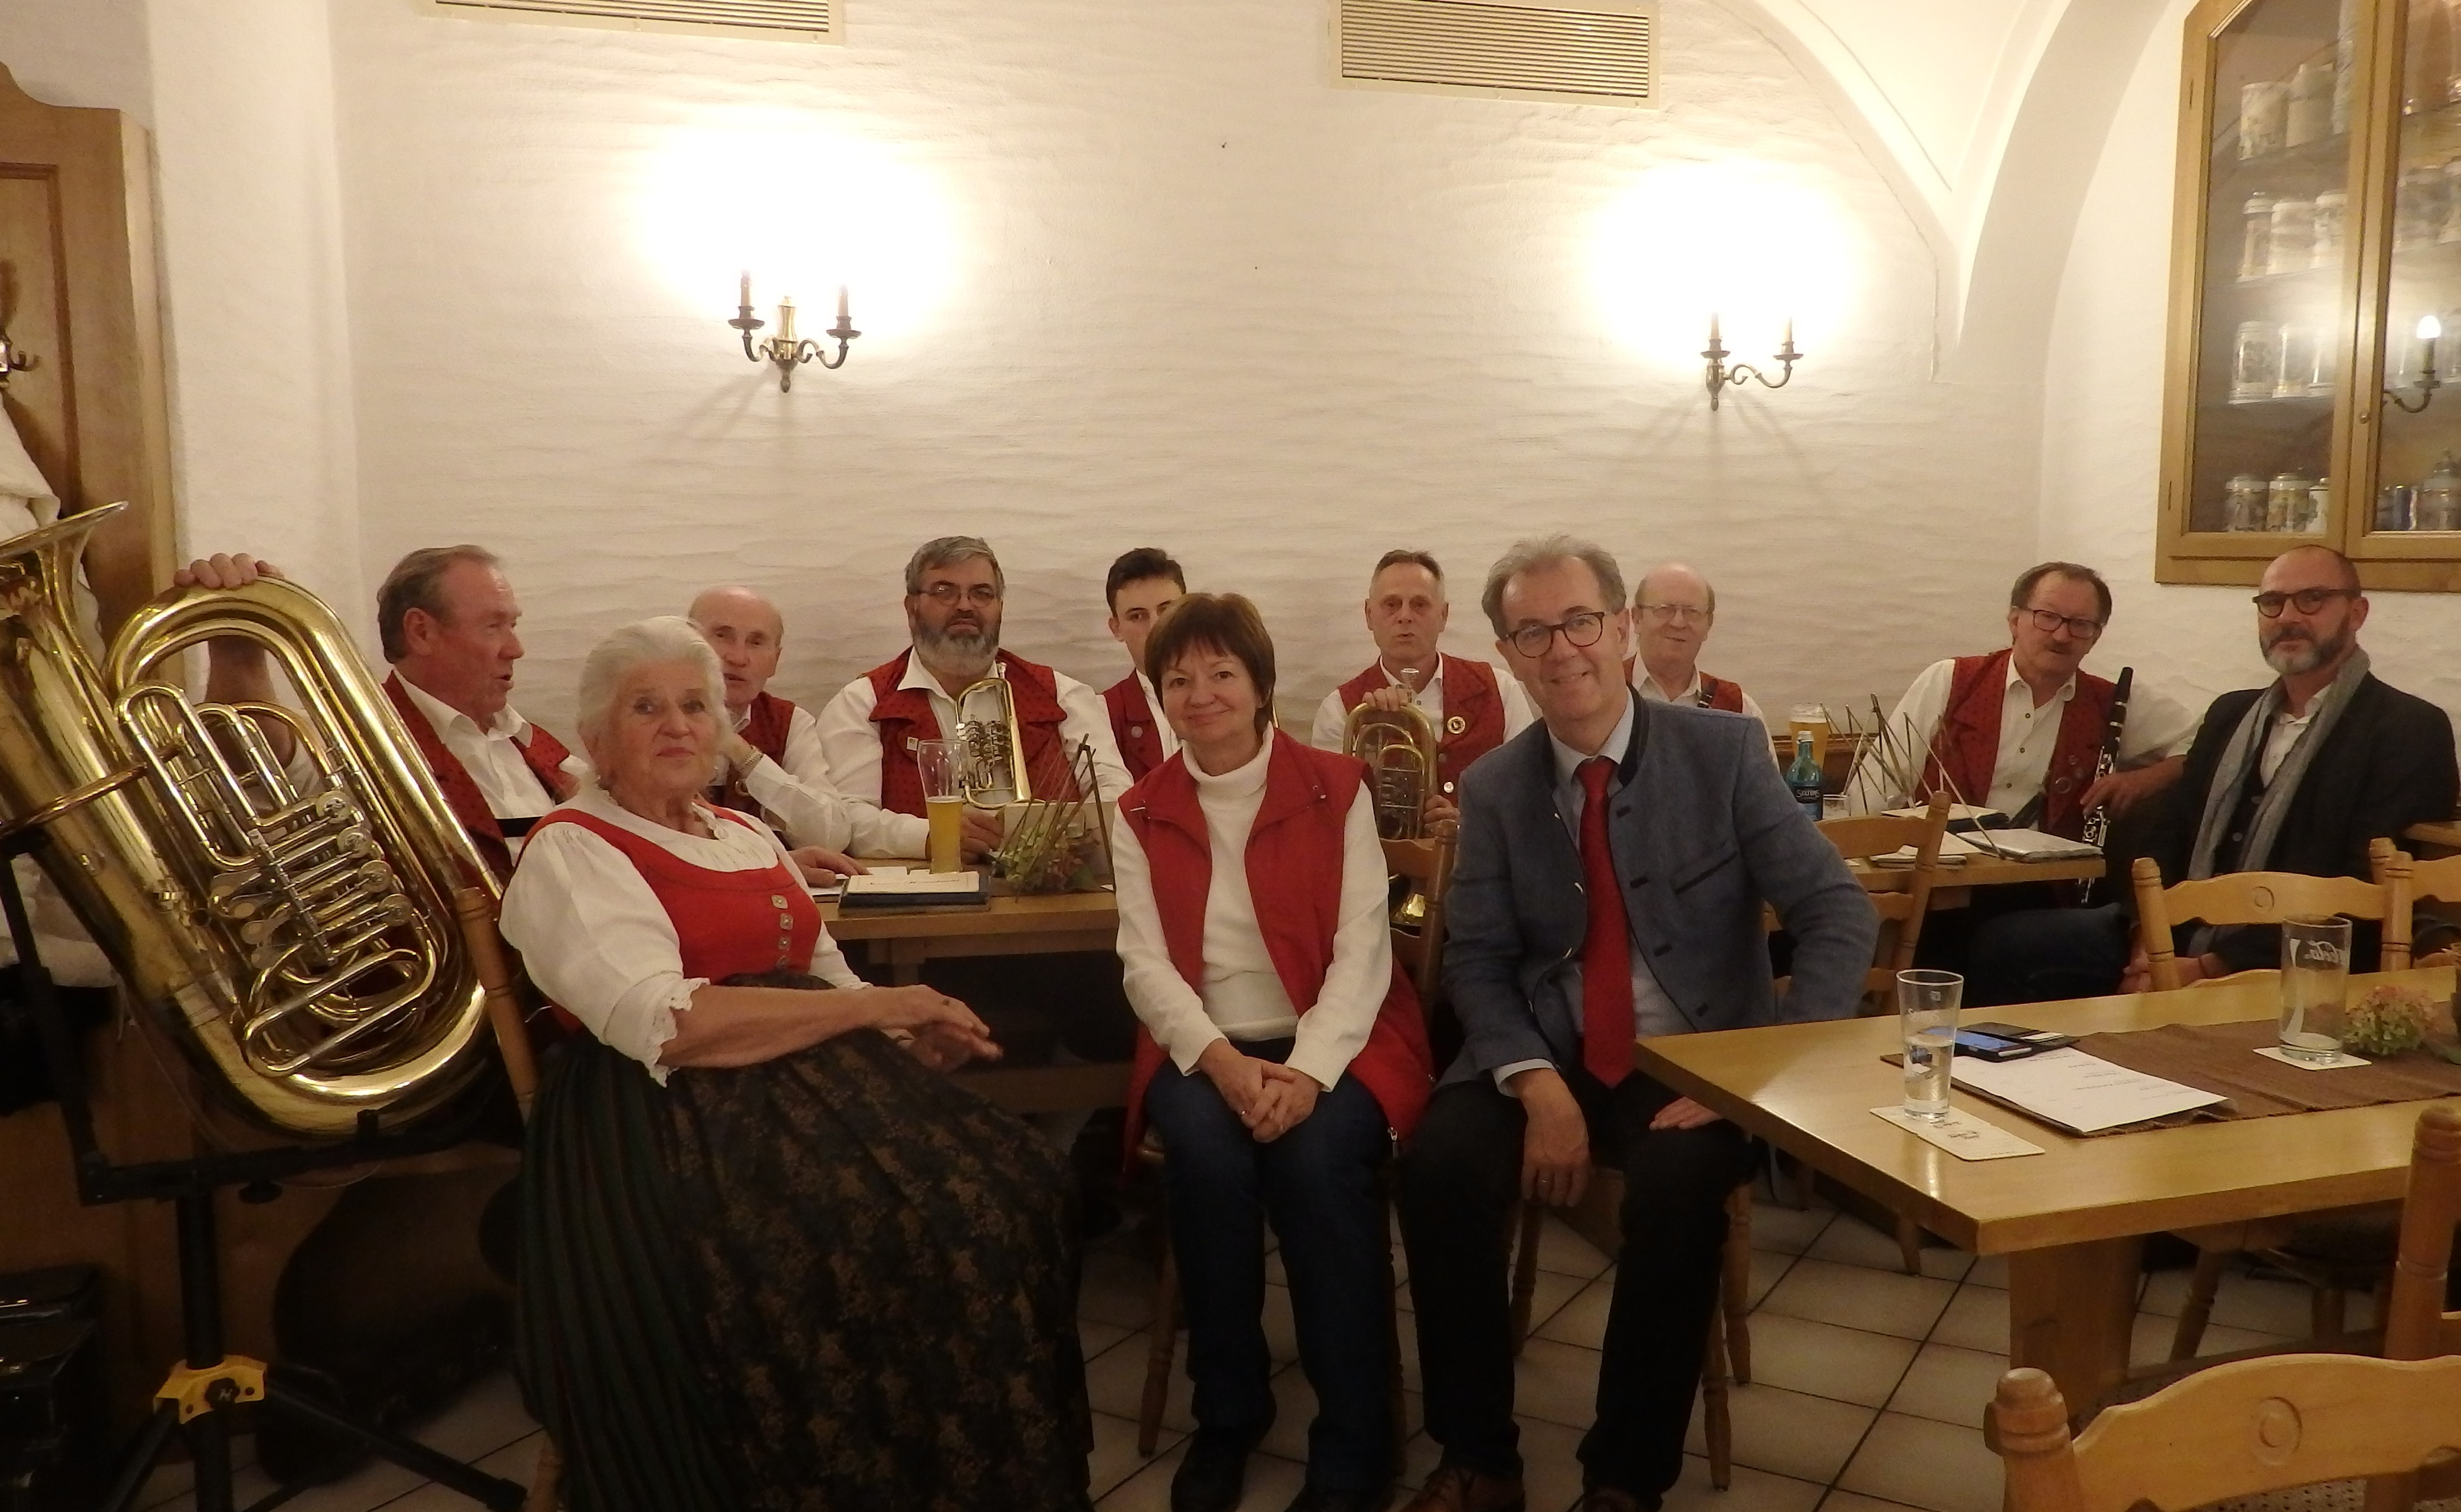 Die Blaskapelle Beratzhausen und alle Mitwirkenden bei der Veranstaltung im Wirtshaus Petermichl (Foto: Elisabeth Meier)